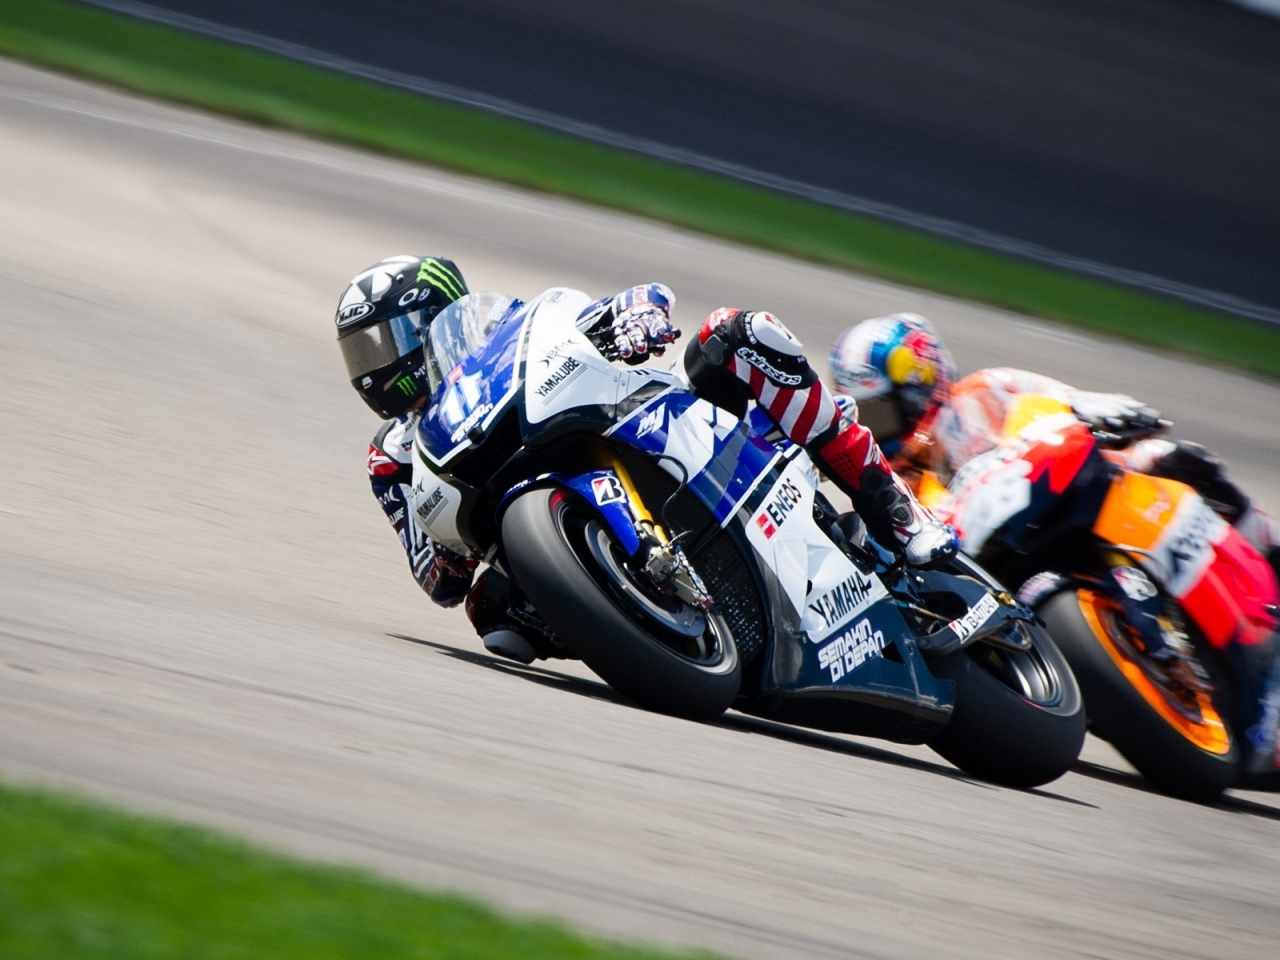 Yamaha Race for 1280 x 960 resolution